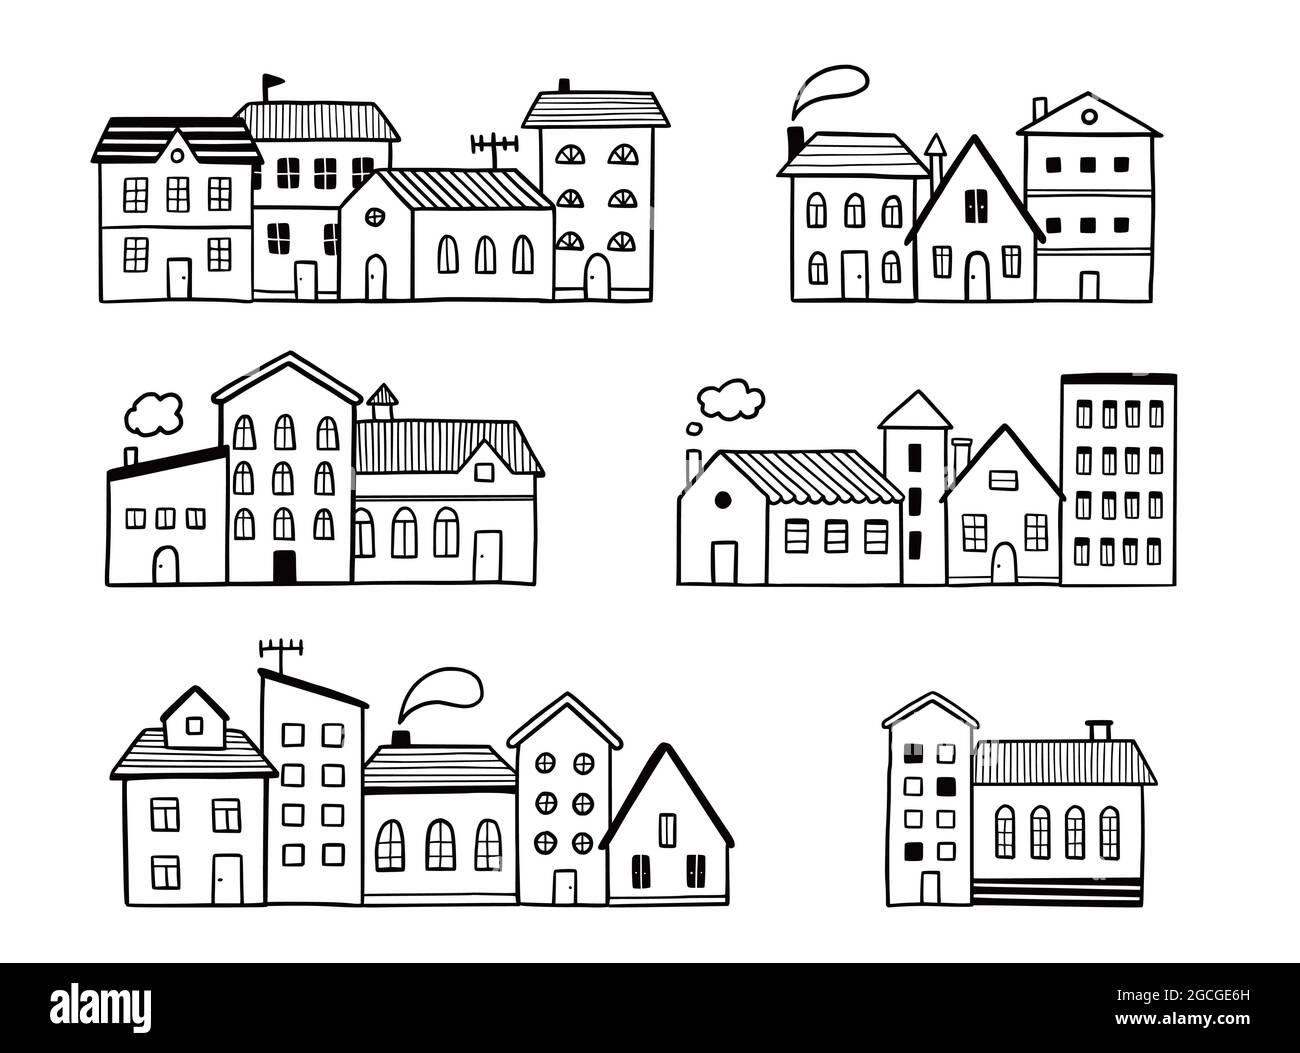 Doodle City Street avec maison. Style d'esquisse dessiné à la main. Maison avec toit. Illustration vectorielle pour village, motif de ville, arrière-plan. Illustration de Vecteur